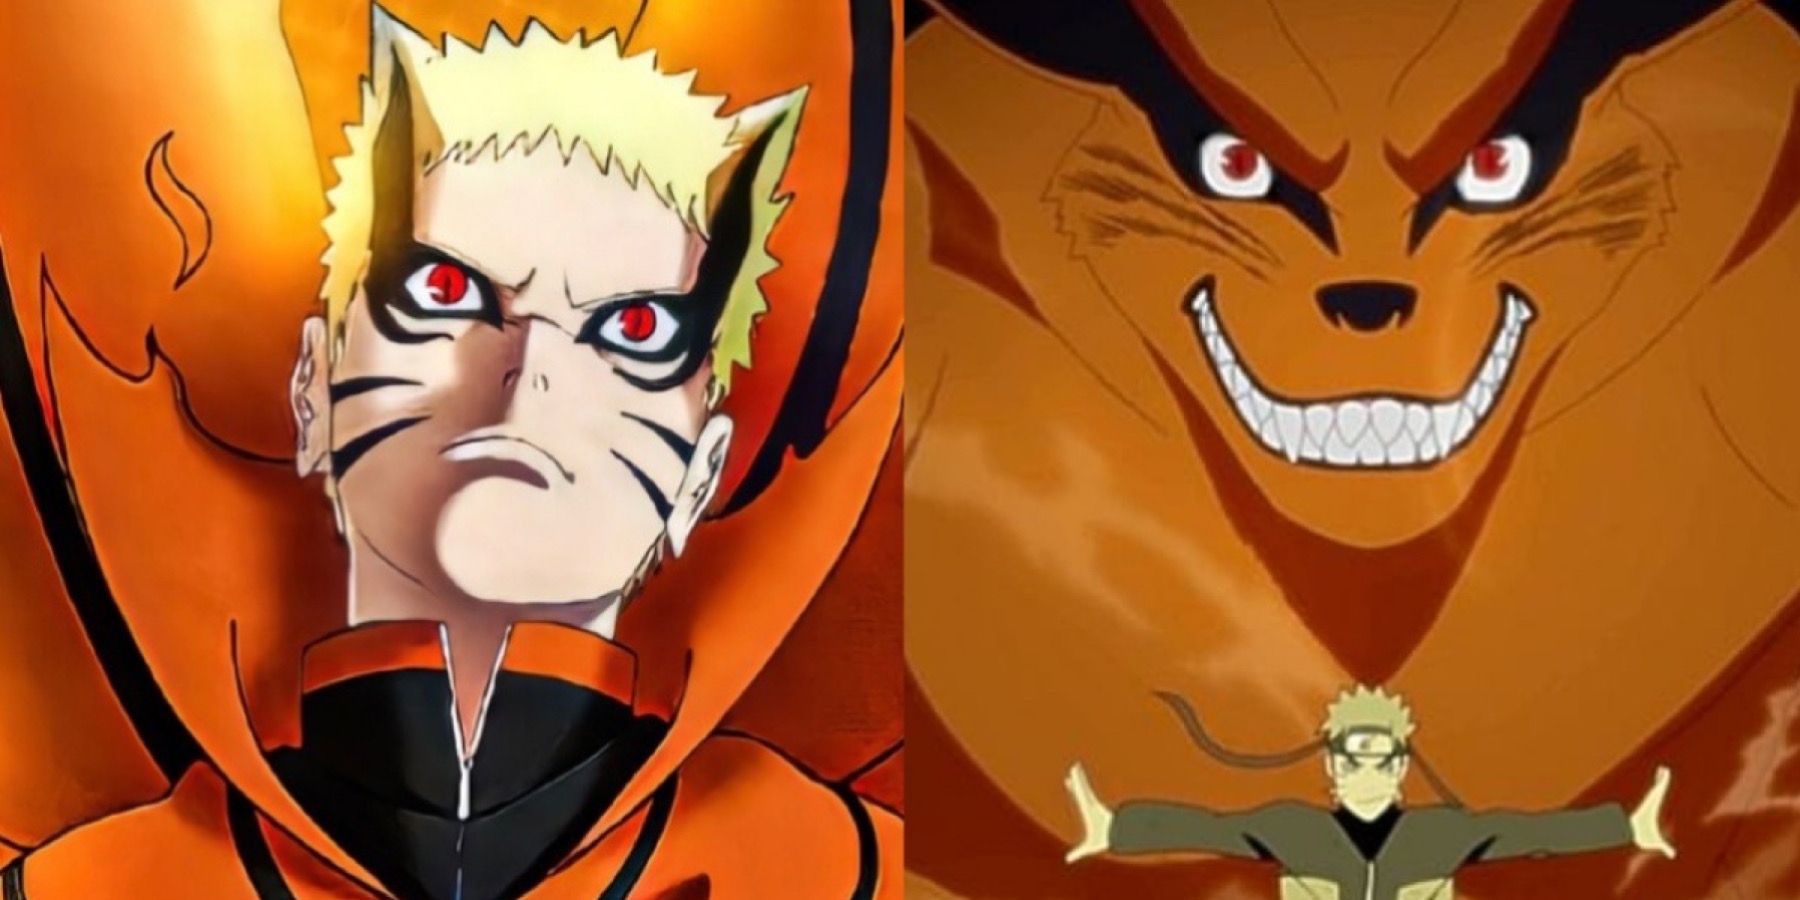 Who is Kurama in Naruto?